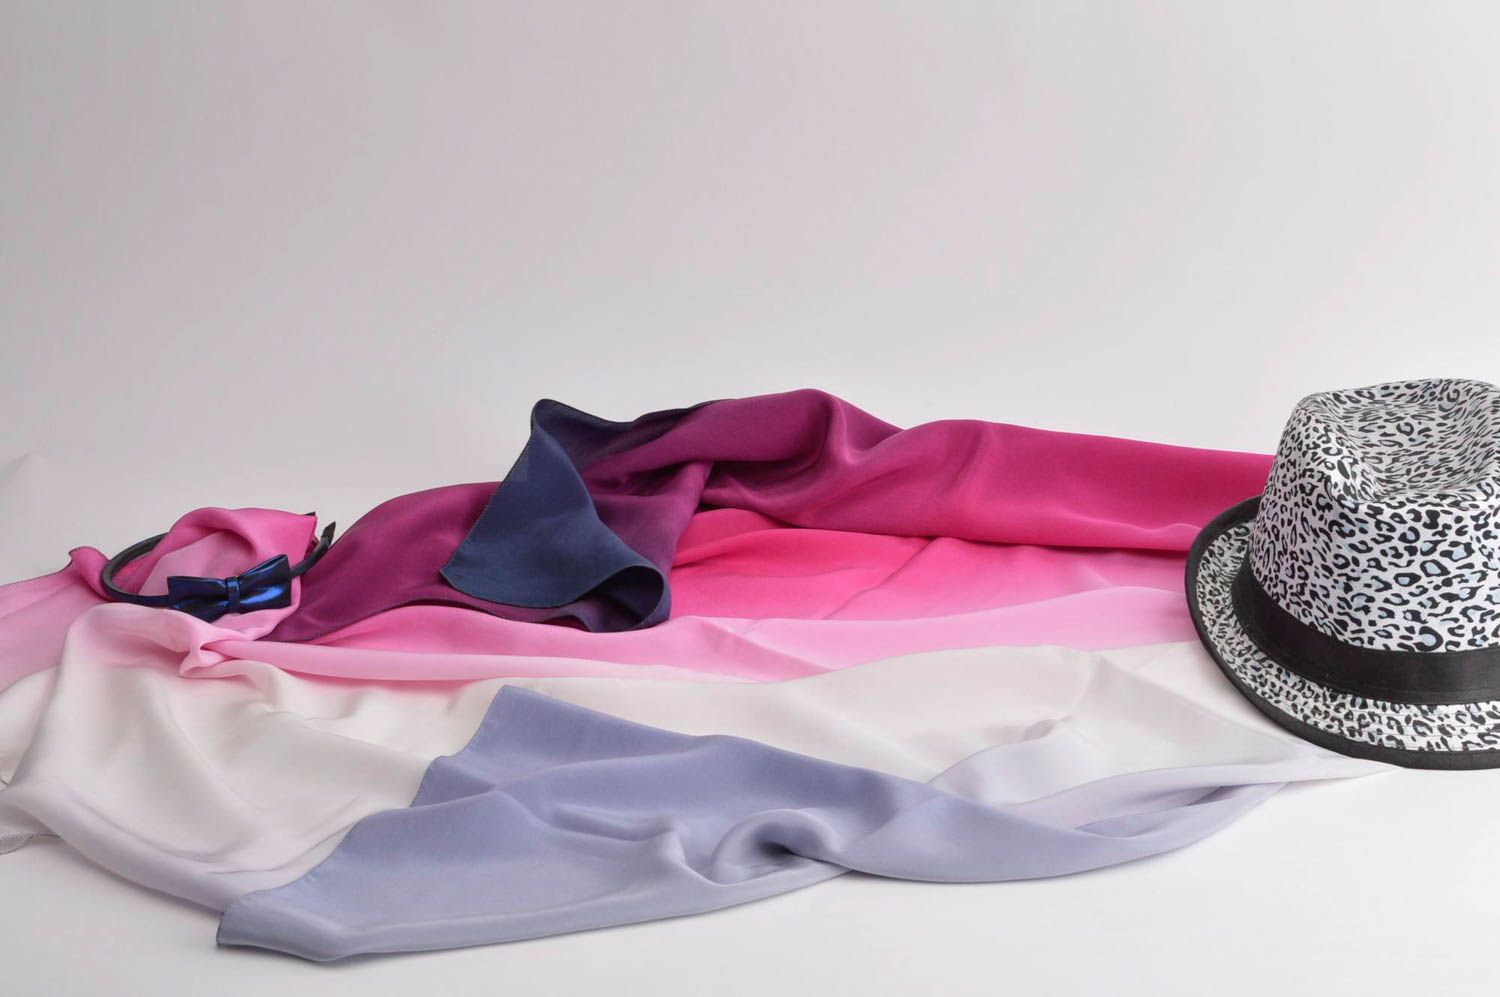 Платок ручной работы платок из шелка женский аксессуар розовый расписной фото 1